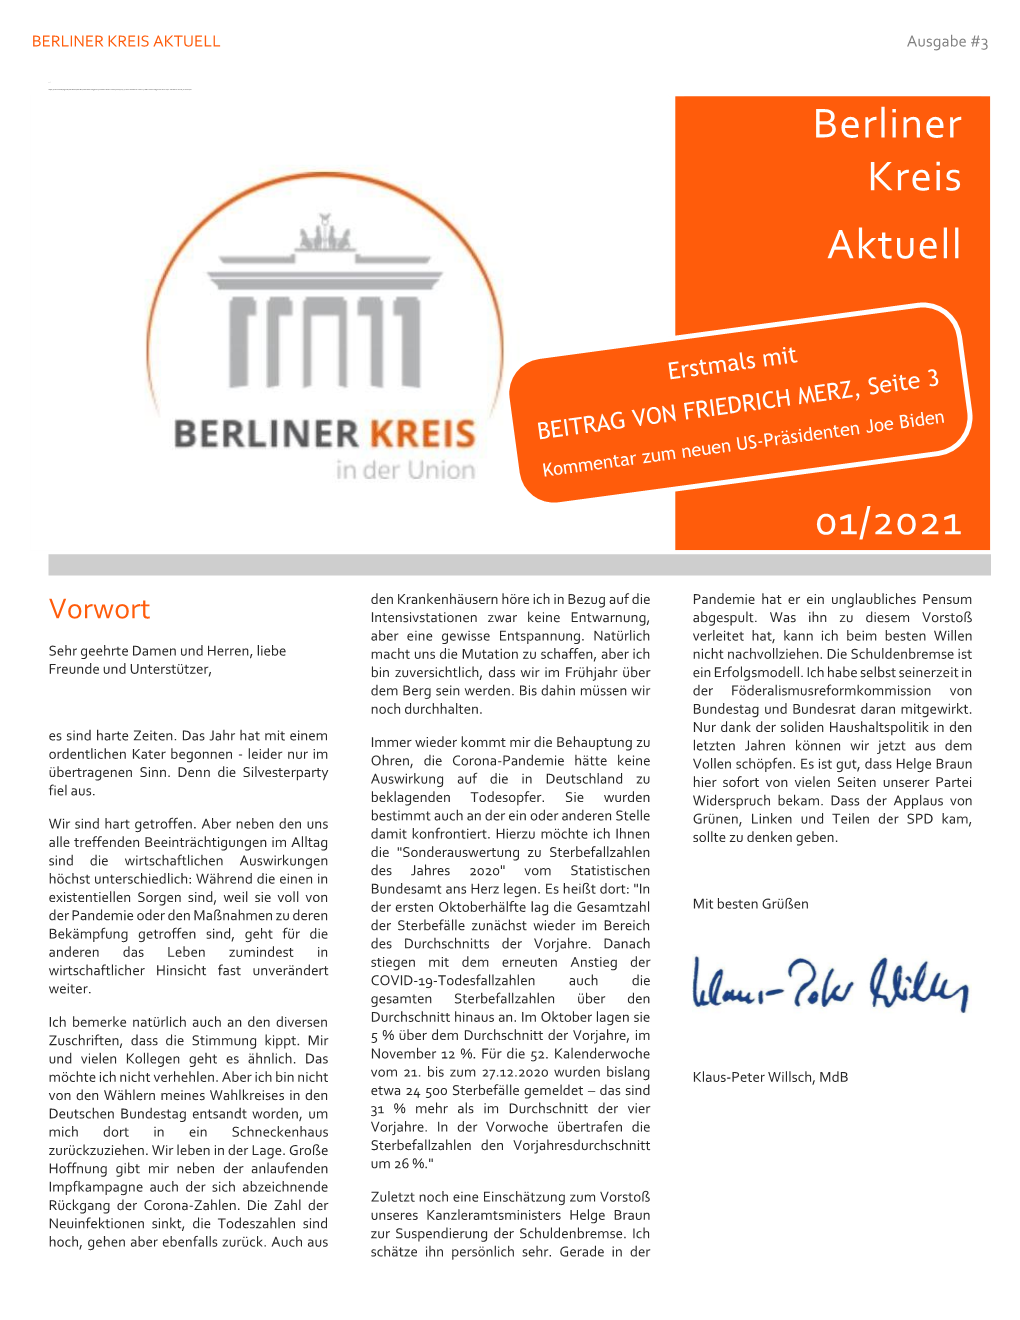 01-2021-Berliner Kreis Aktuell #3